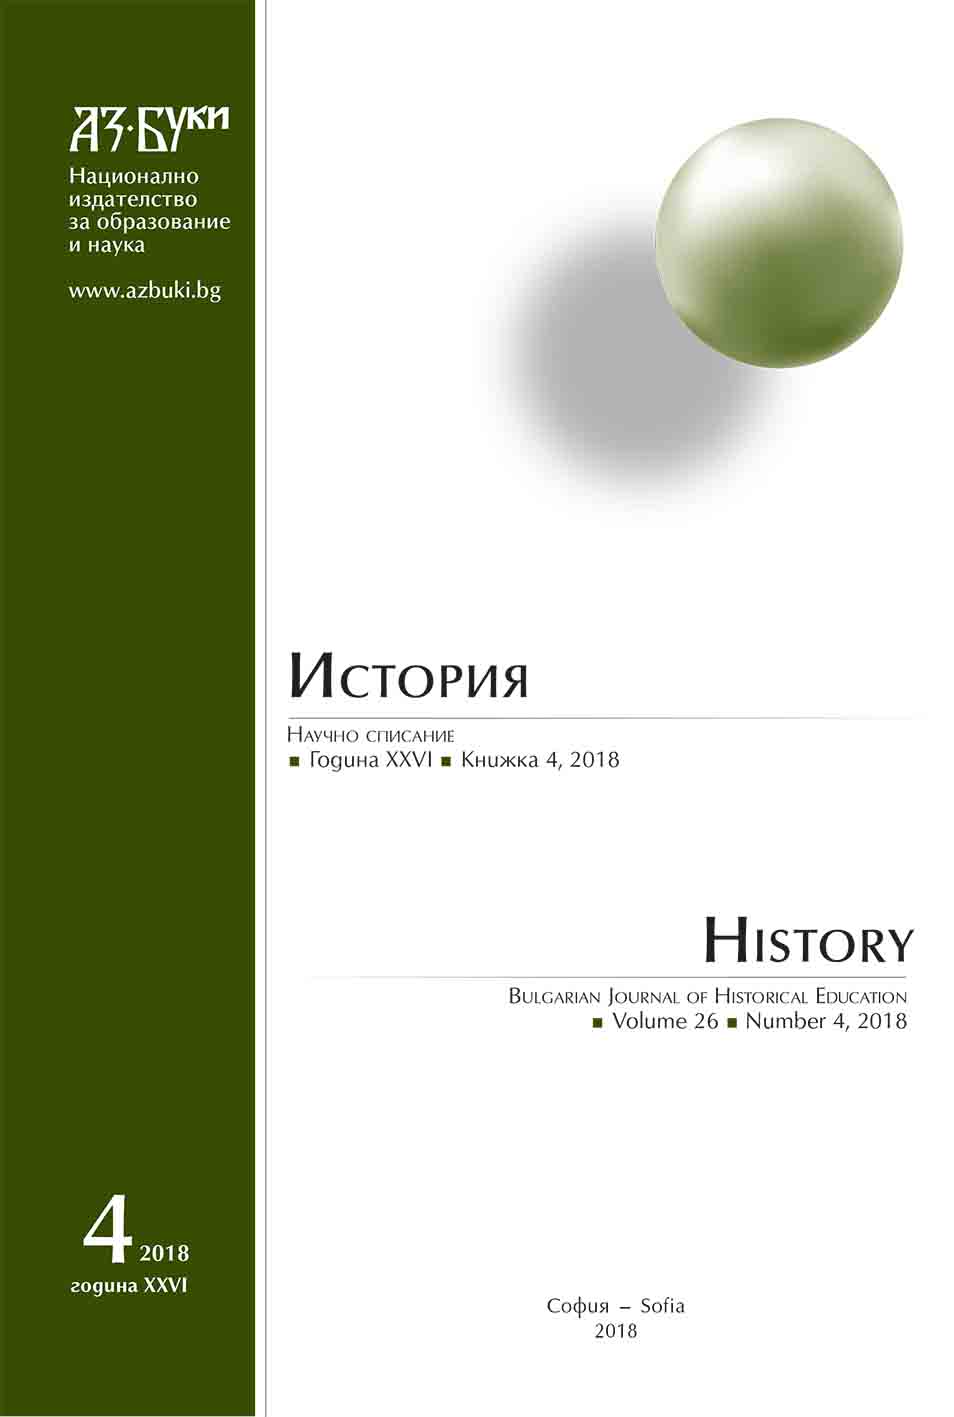 Читалищното образование в България през периода 1918 – 1944 г.